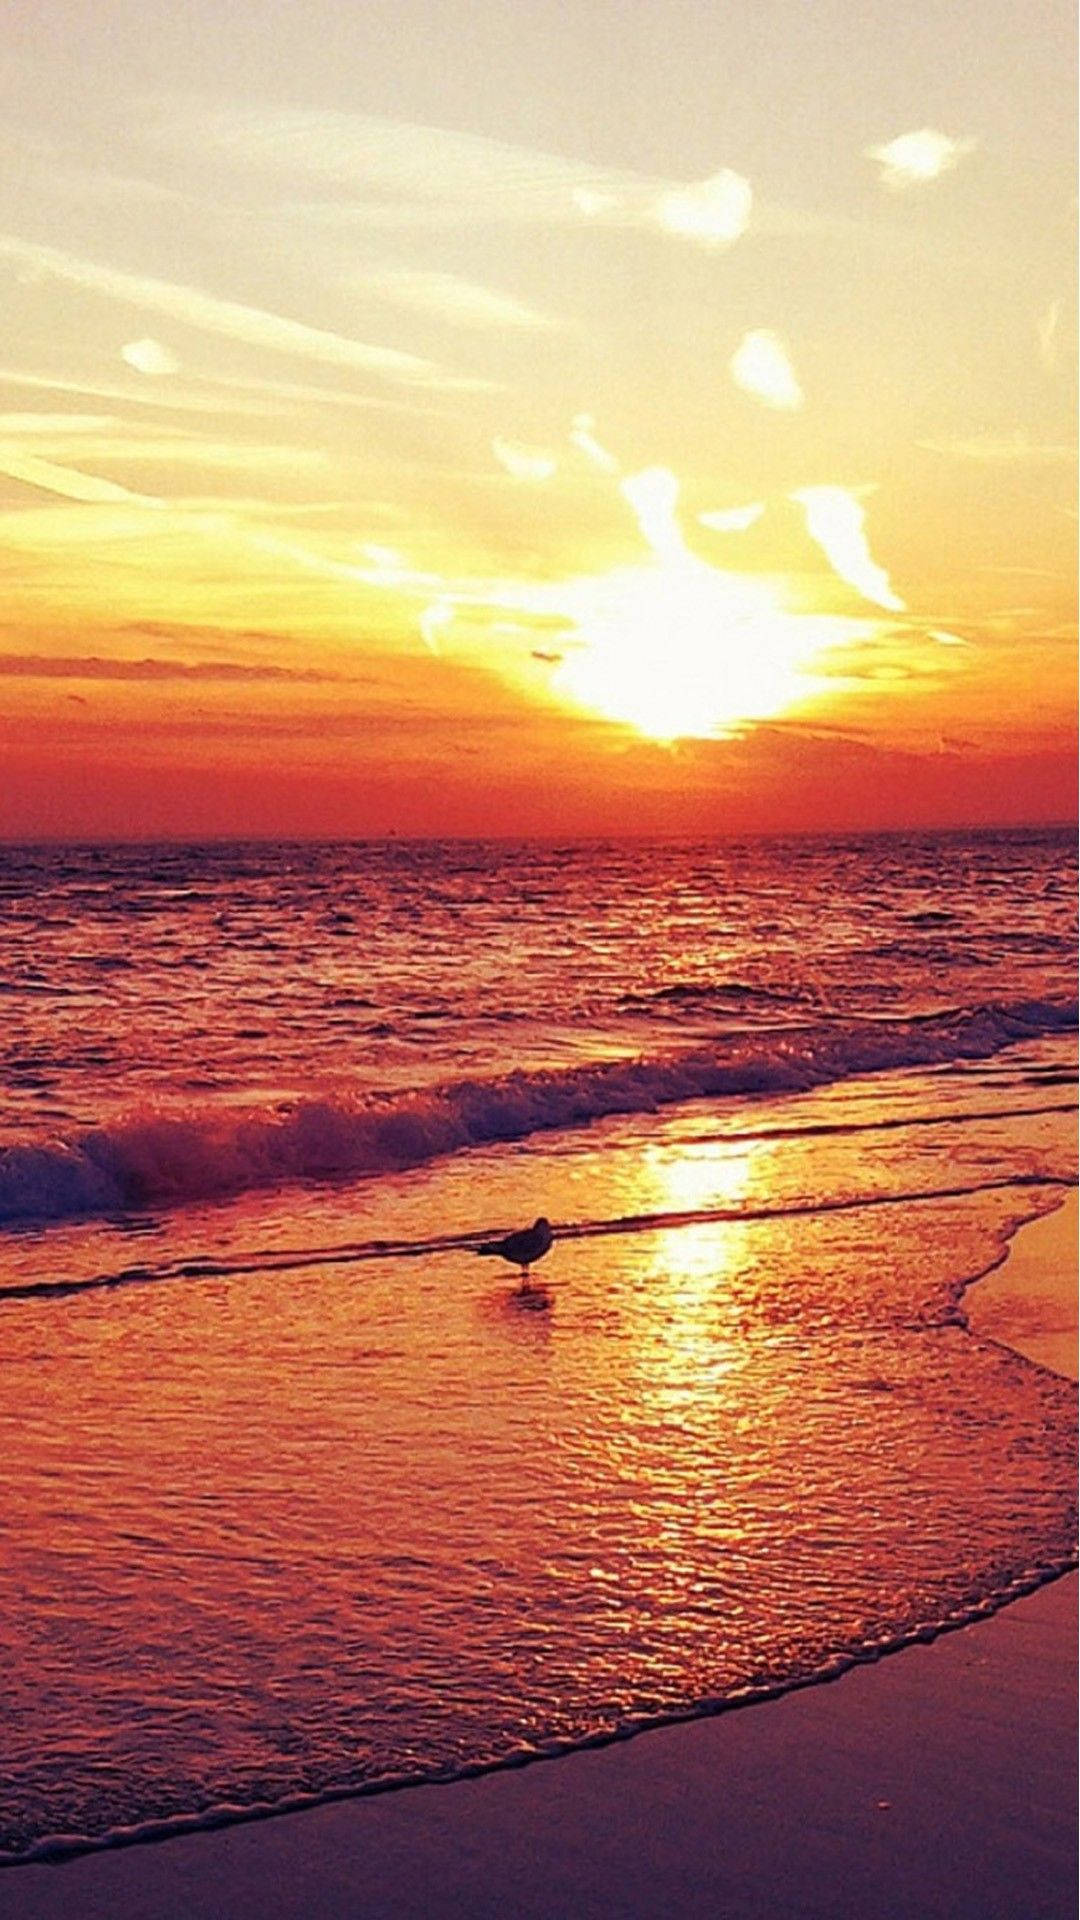 4k Iphone Bird On Beach At Sunset